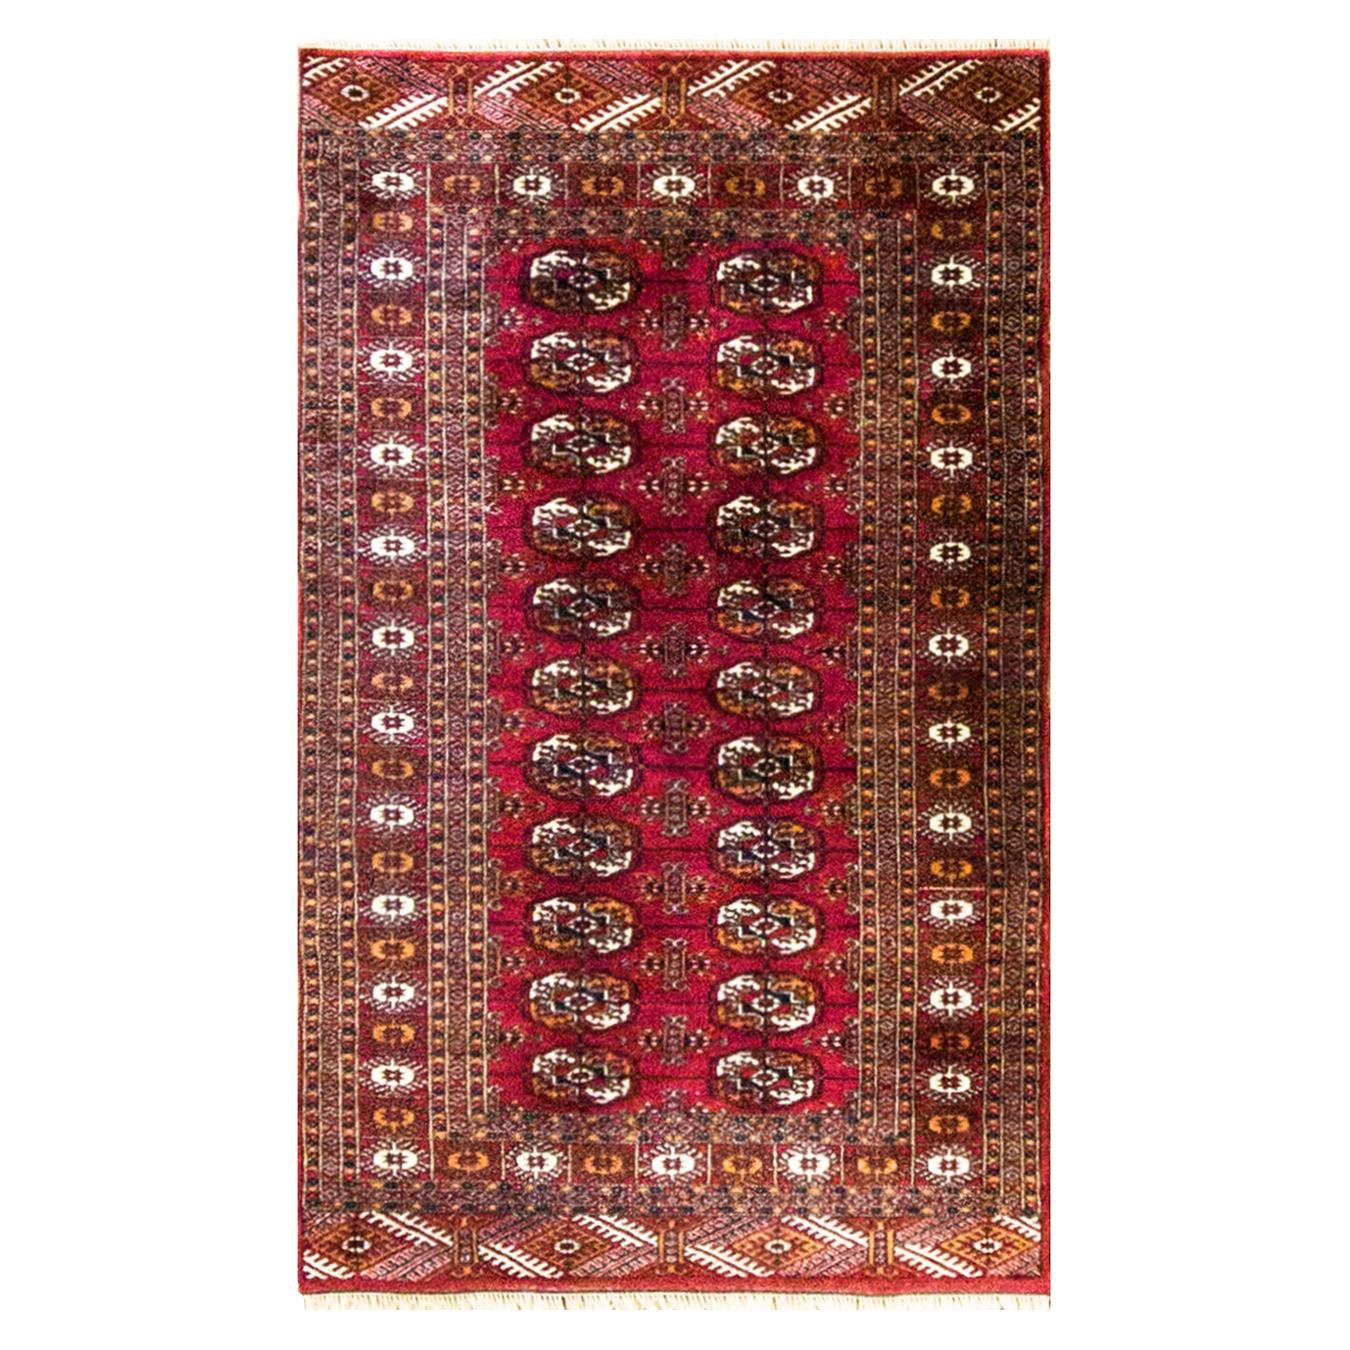 Persisch-türkischer Teppich